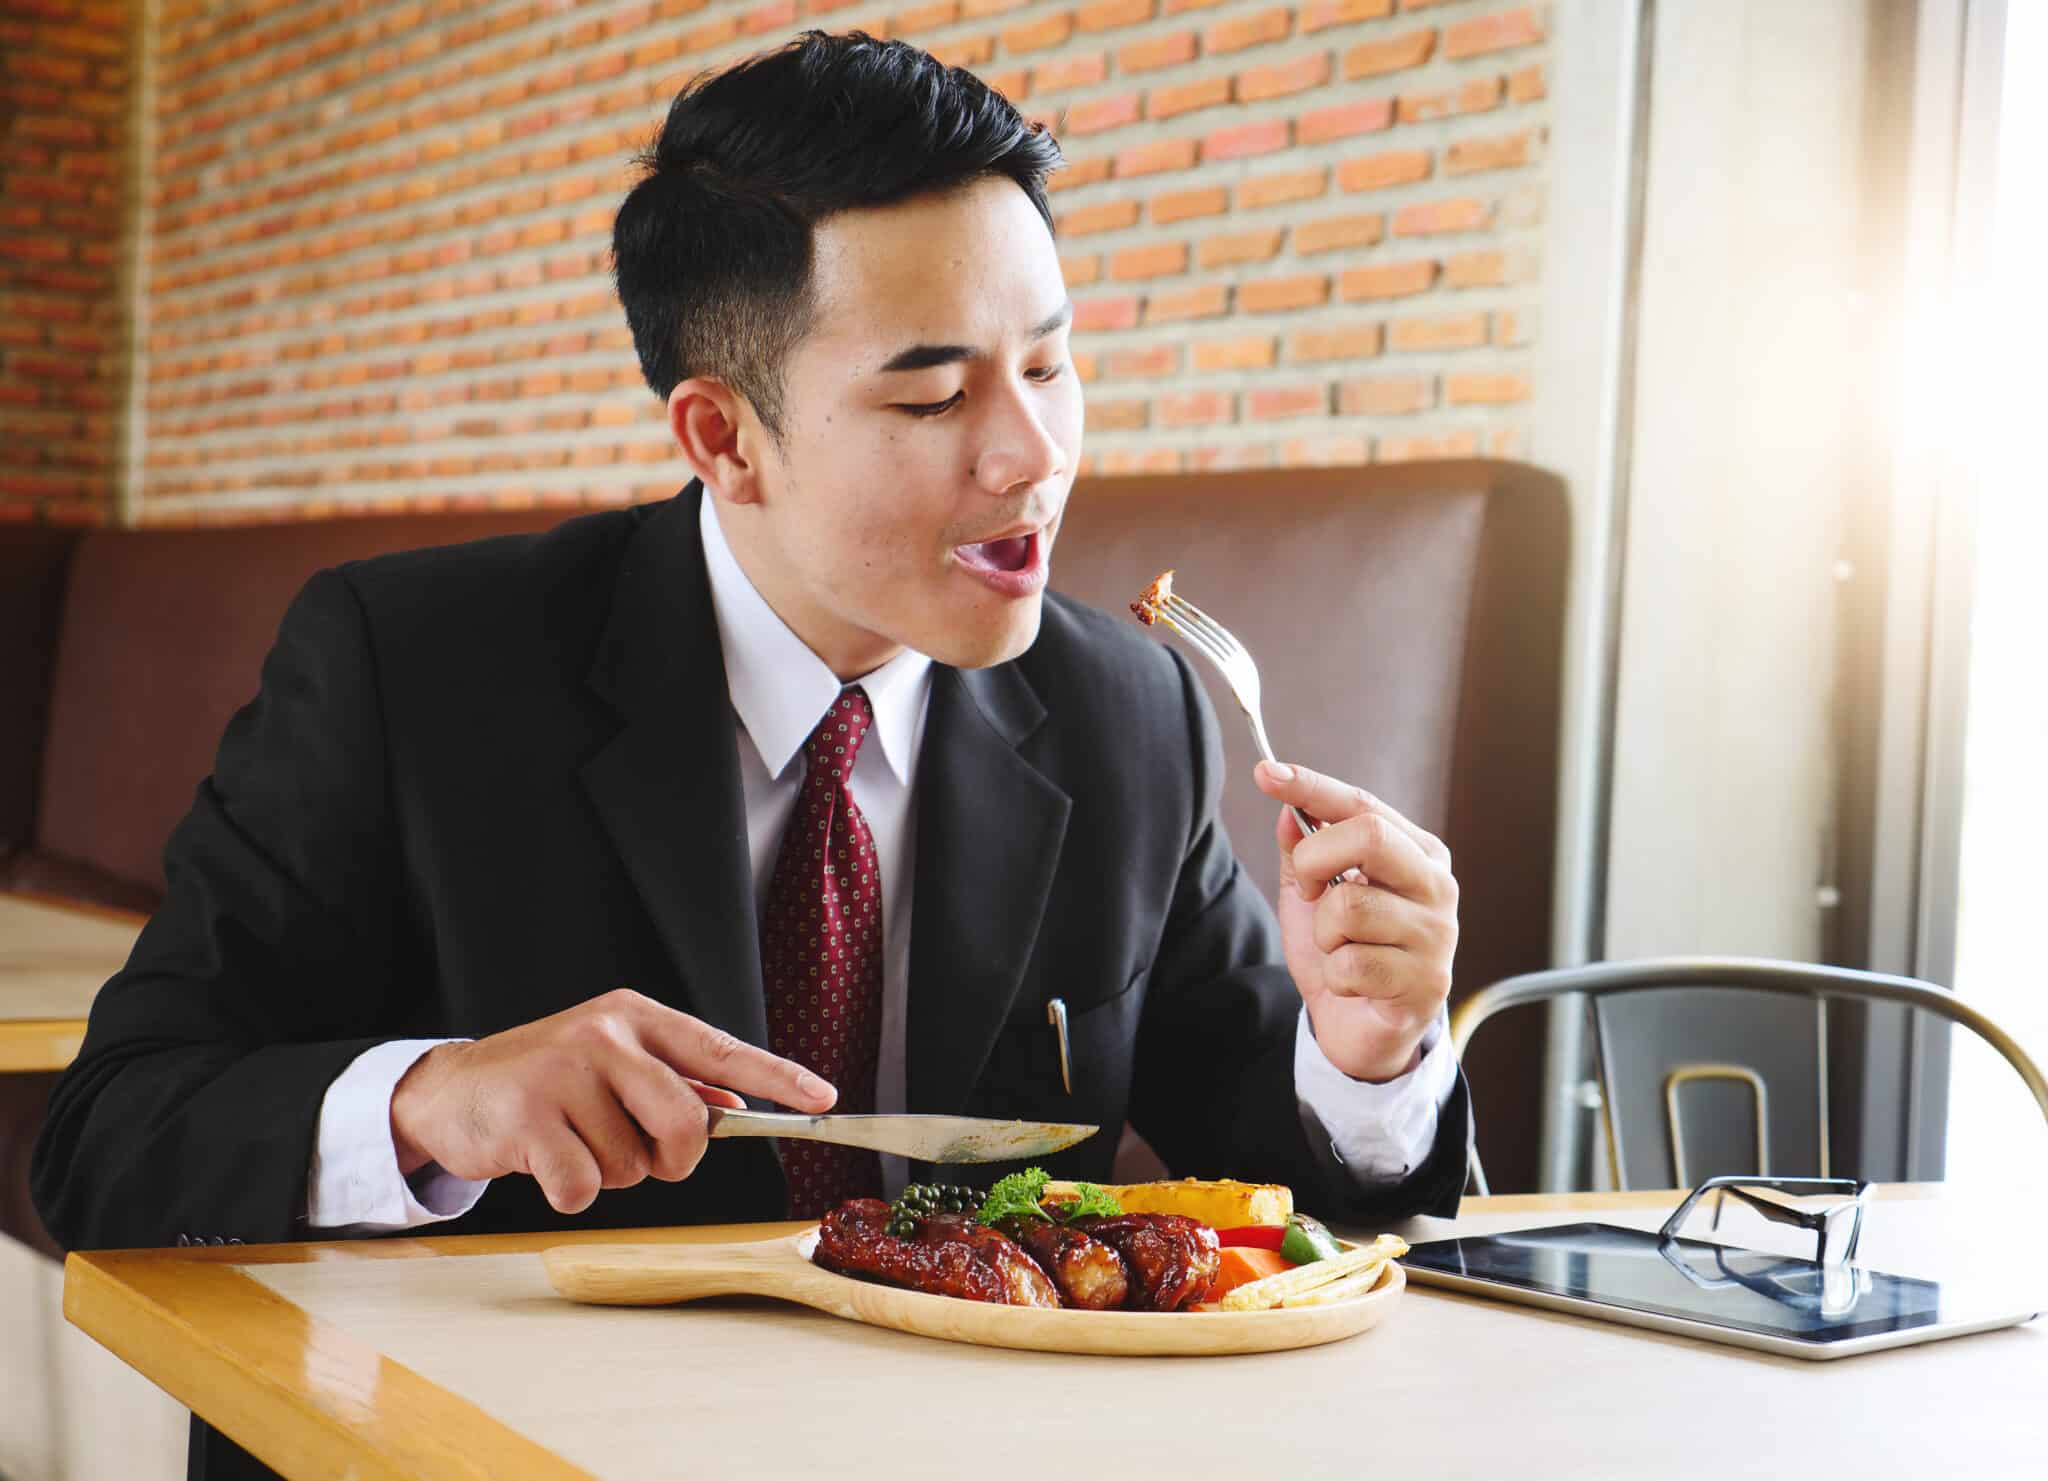 Egy öltönyös férfi ül egy étteremben, a villáján egy darab hús, a tányéron előtte hús és zöldségek